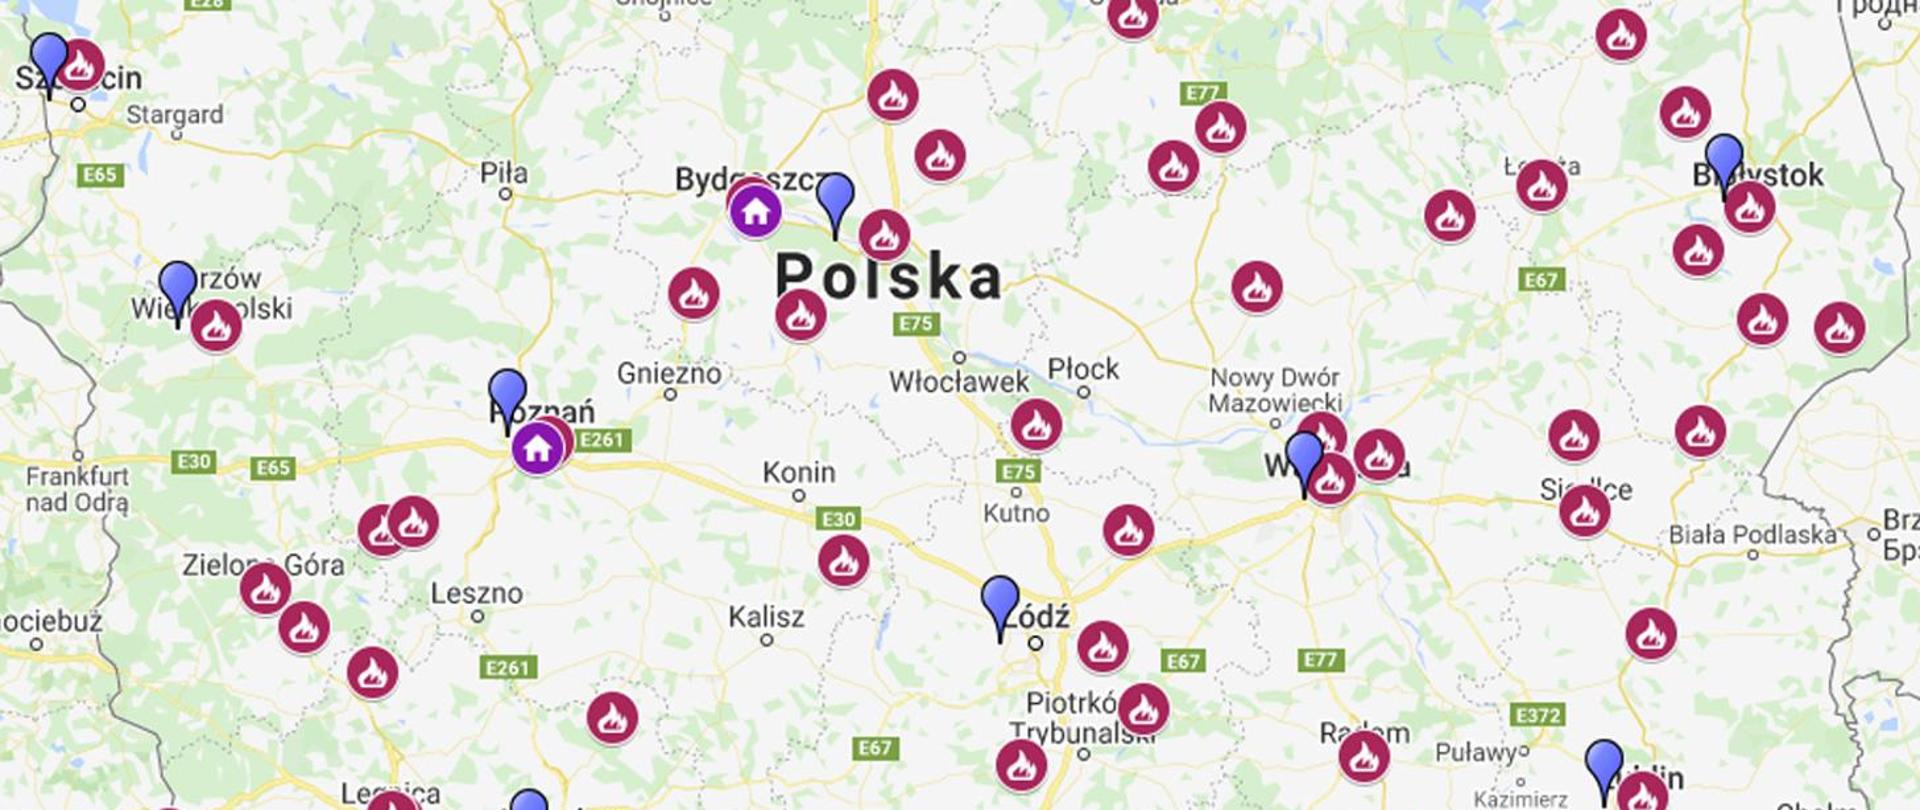 Zdjęcie przedstawia fragment mapy Polski z zaznaczonymi salami edukacyjnymi ognik